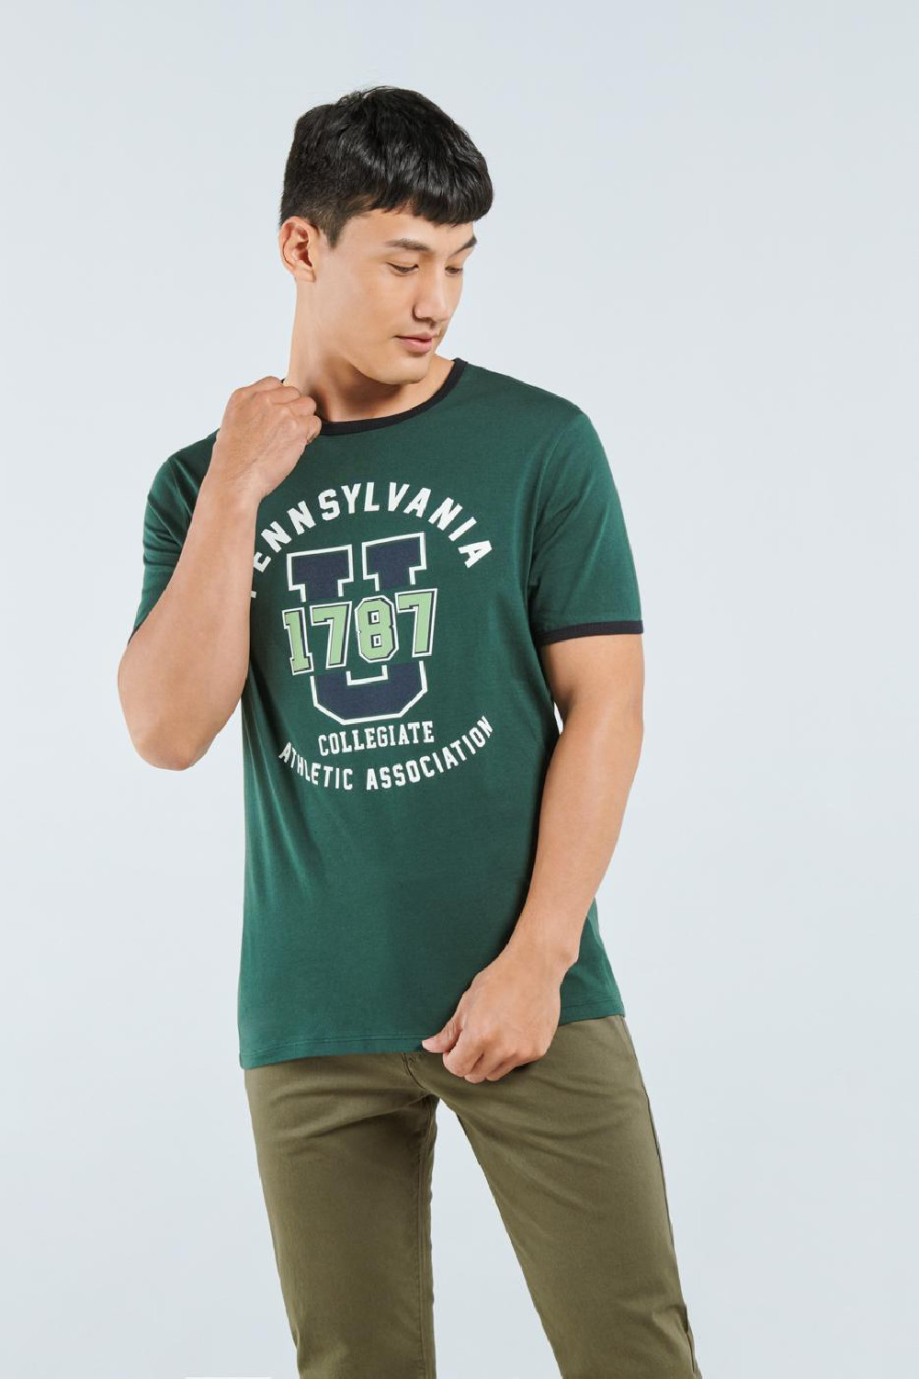 Camiseta verde con contrastes, diseño college y manga corta